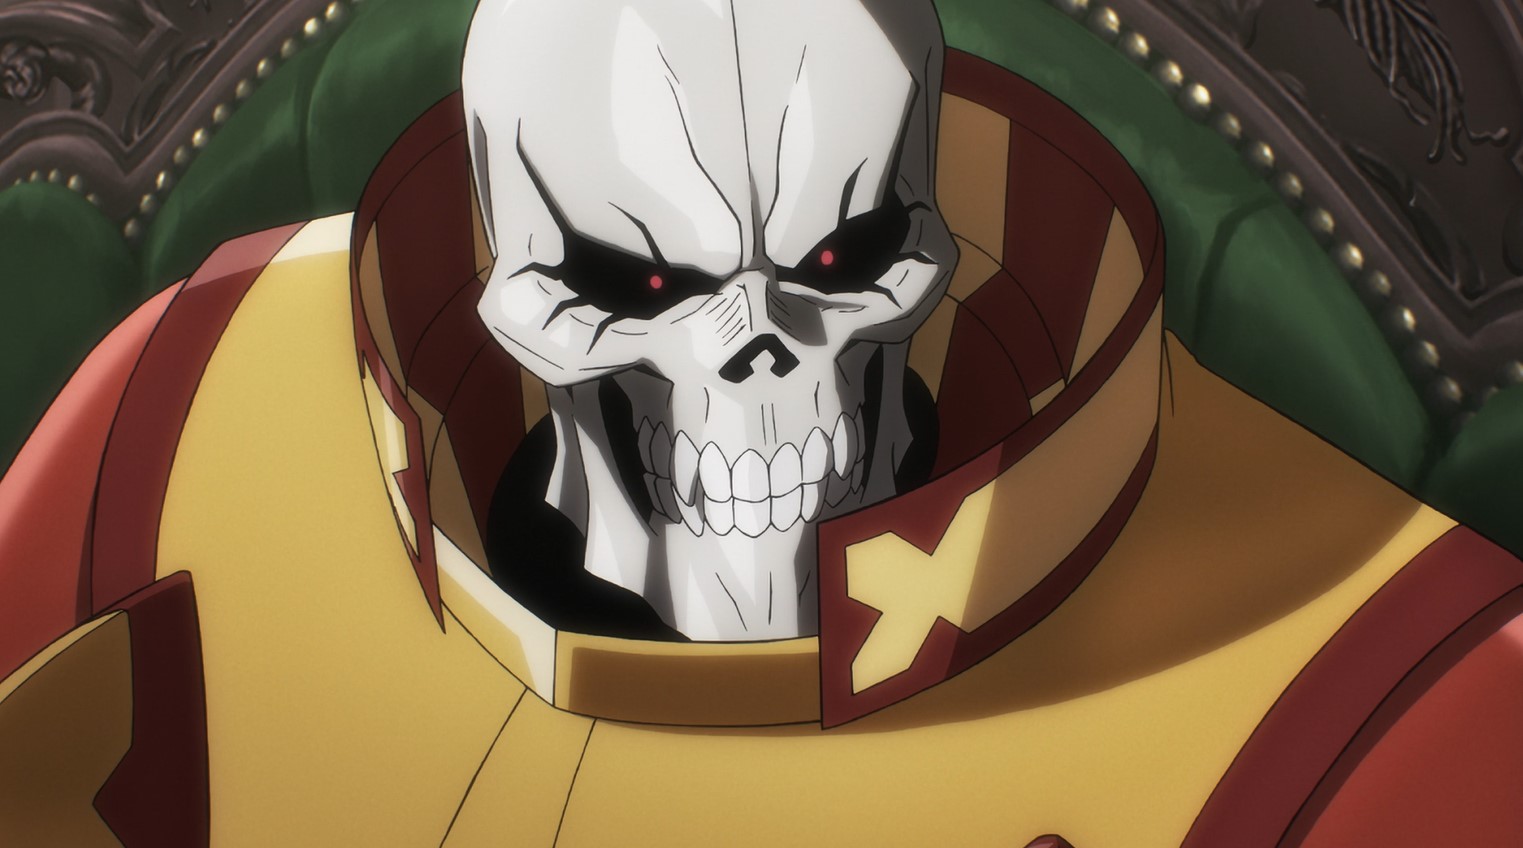 Ele virou um esqueleto mas valeu a pena - (Gaikotsu Kishi